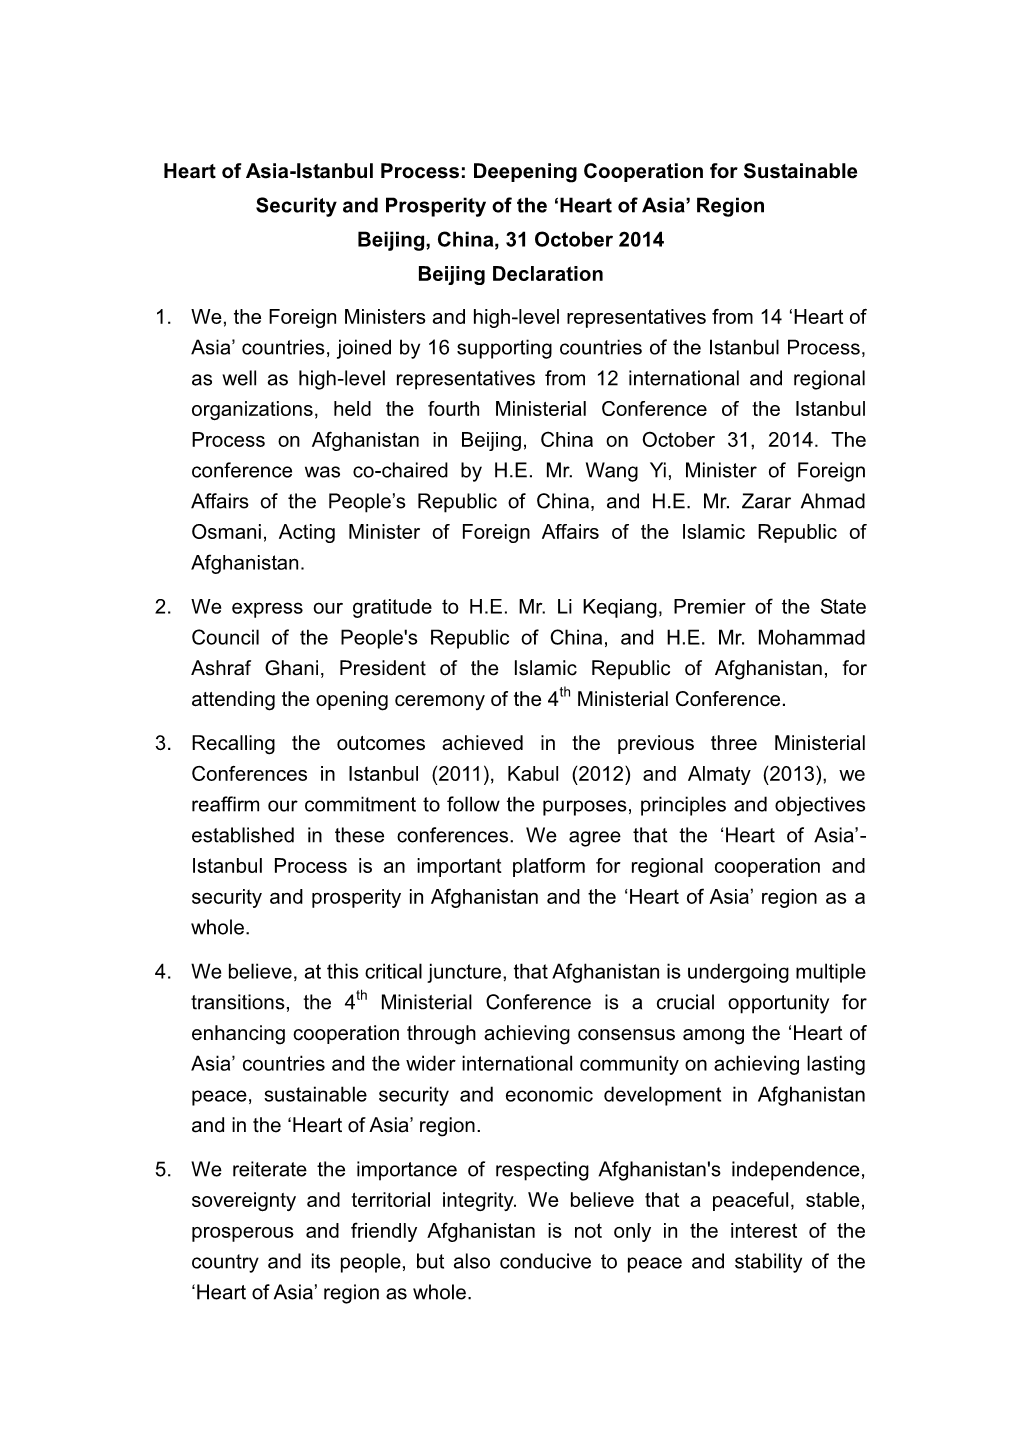 4Th-Ministerial-Declaration-31-October-2014-Beijing.Pdf